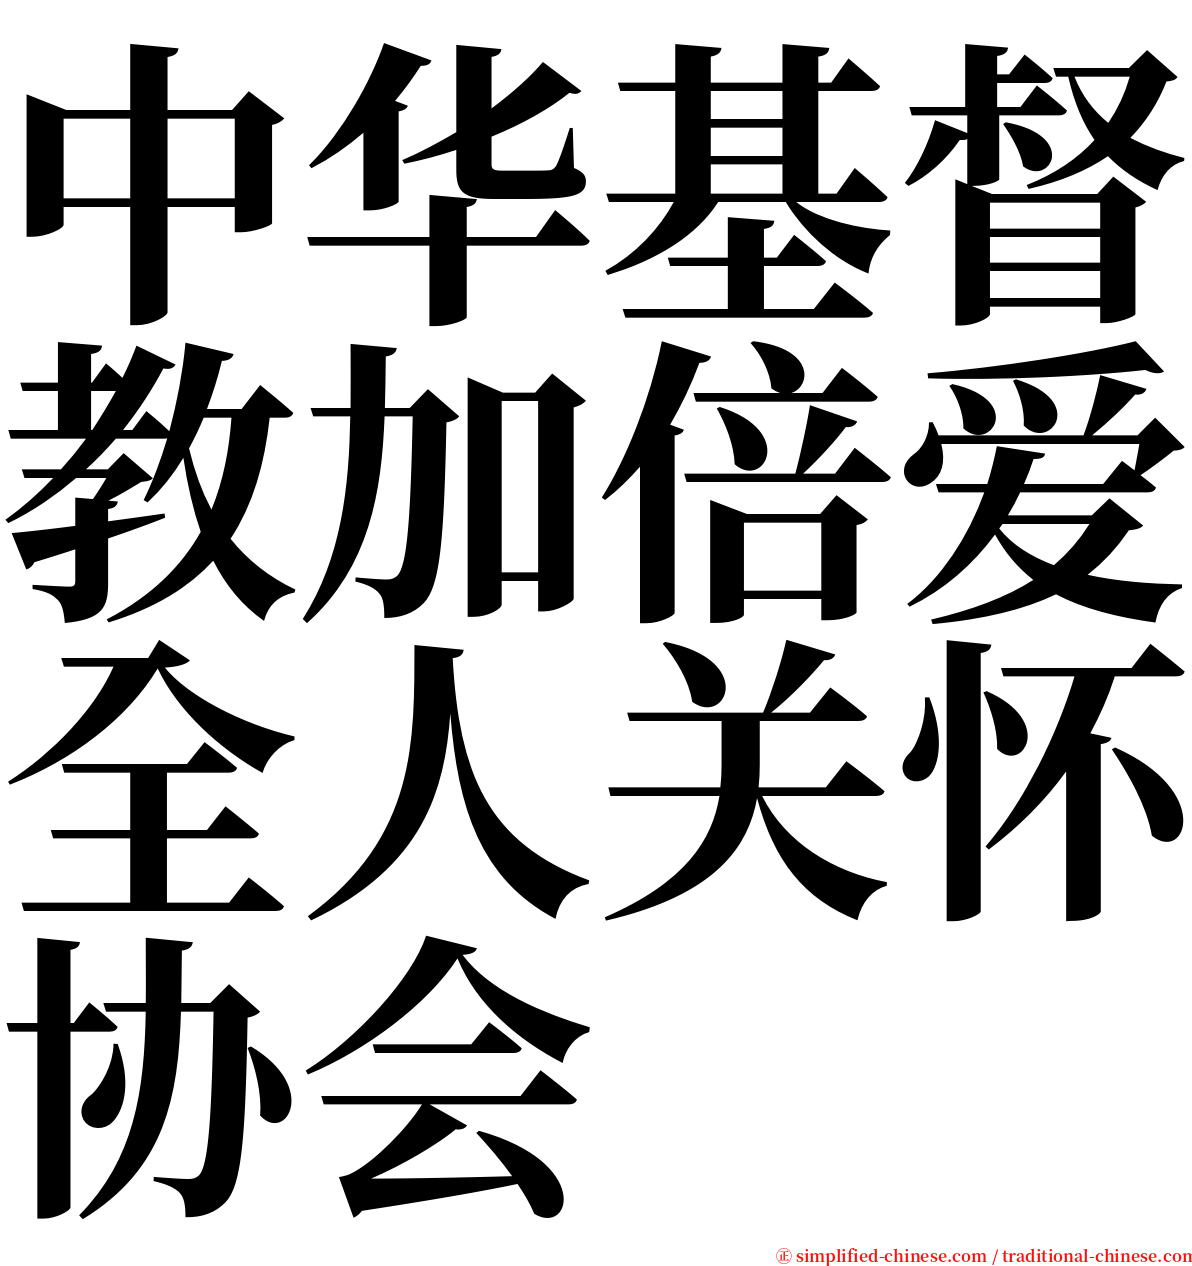 中华基督教加倍爱全人关怀协会 serif font